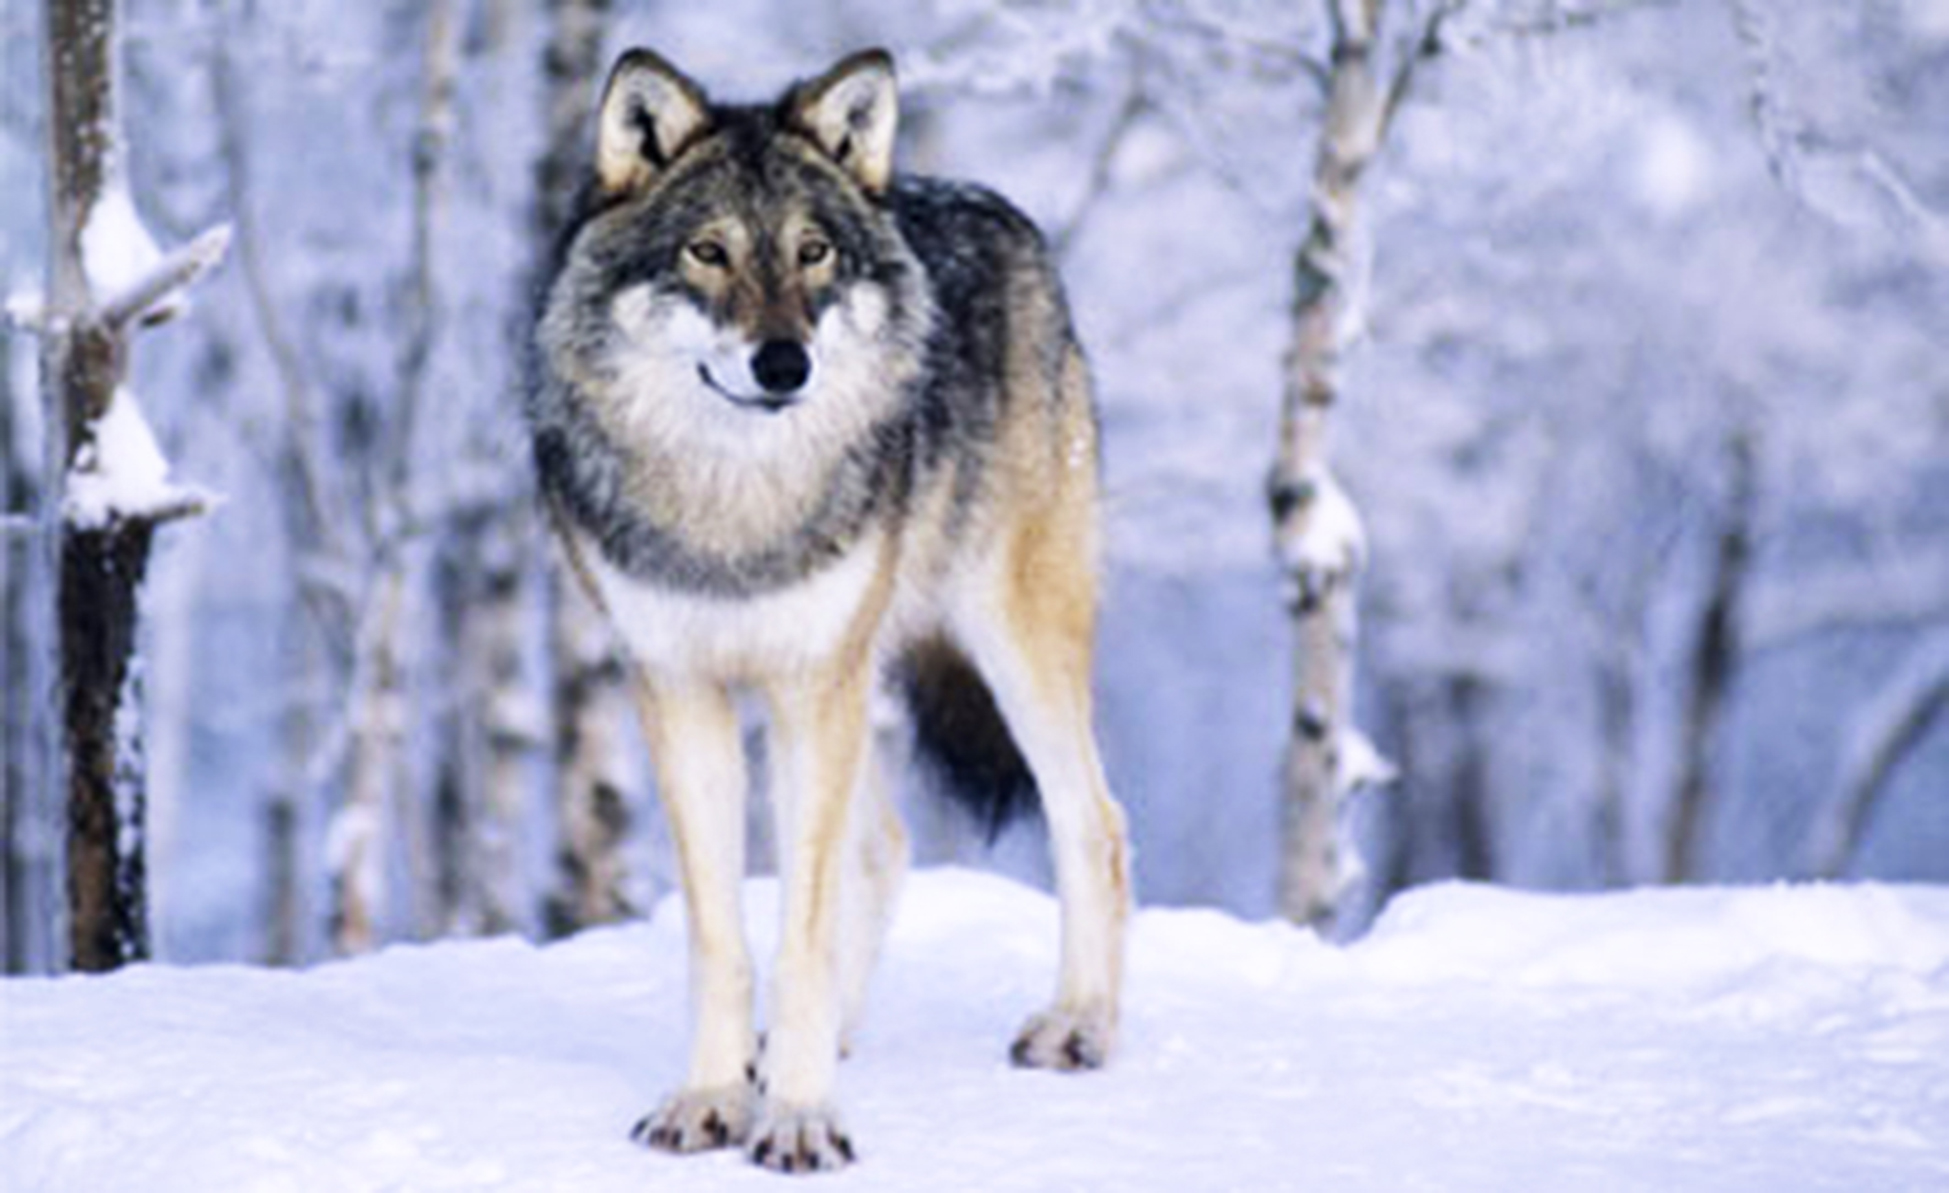 Finske ulver kan komme til Norge